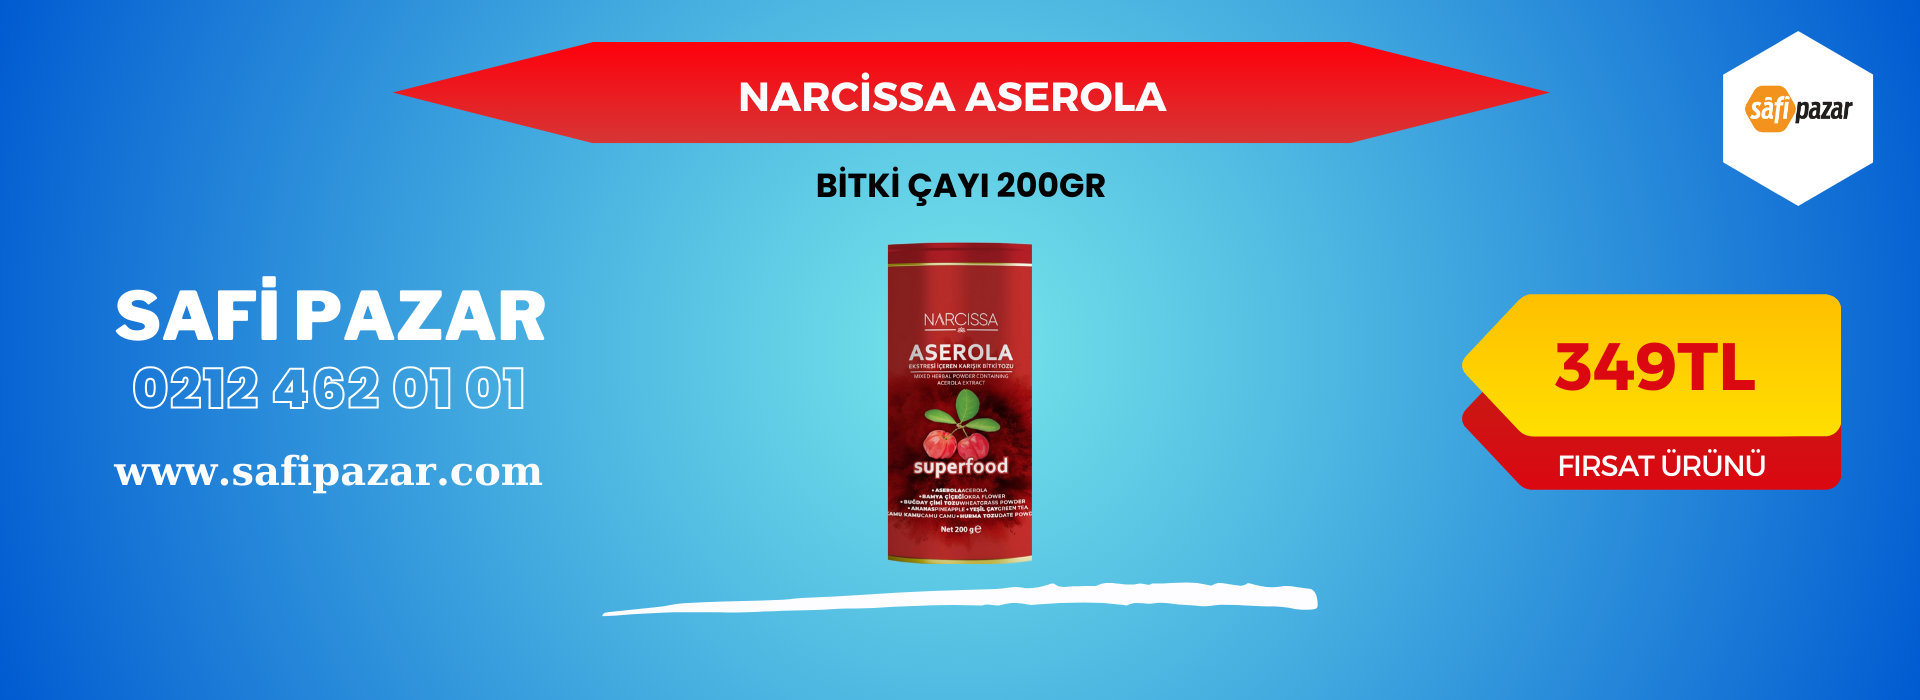 Narcissa aserola çayı 200gr